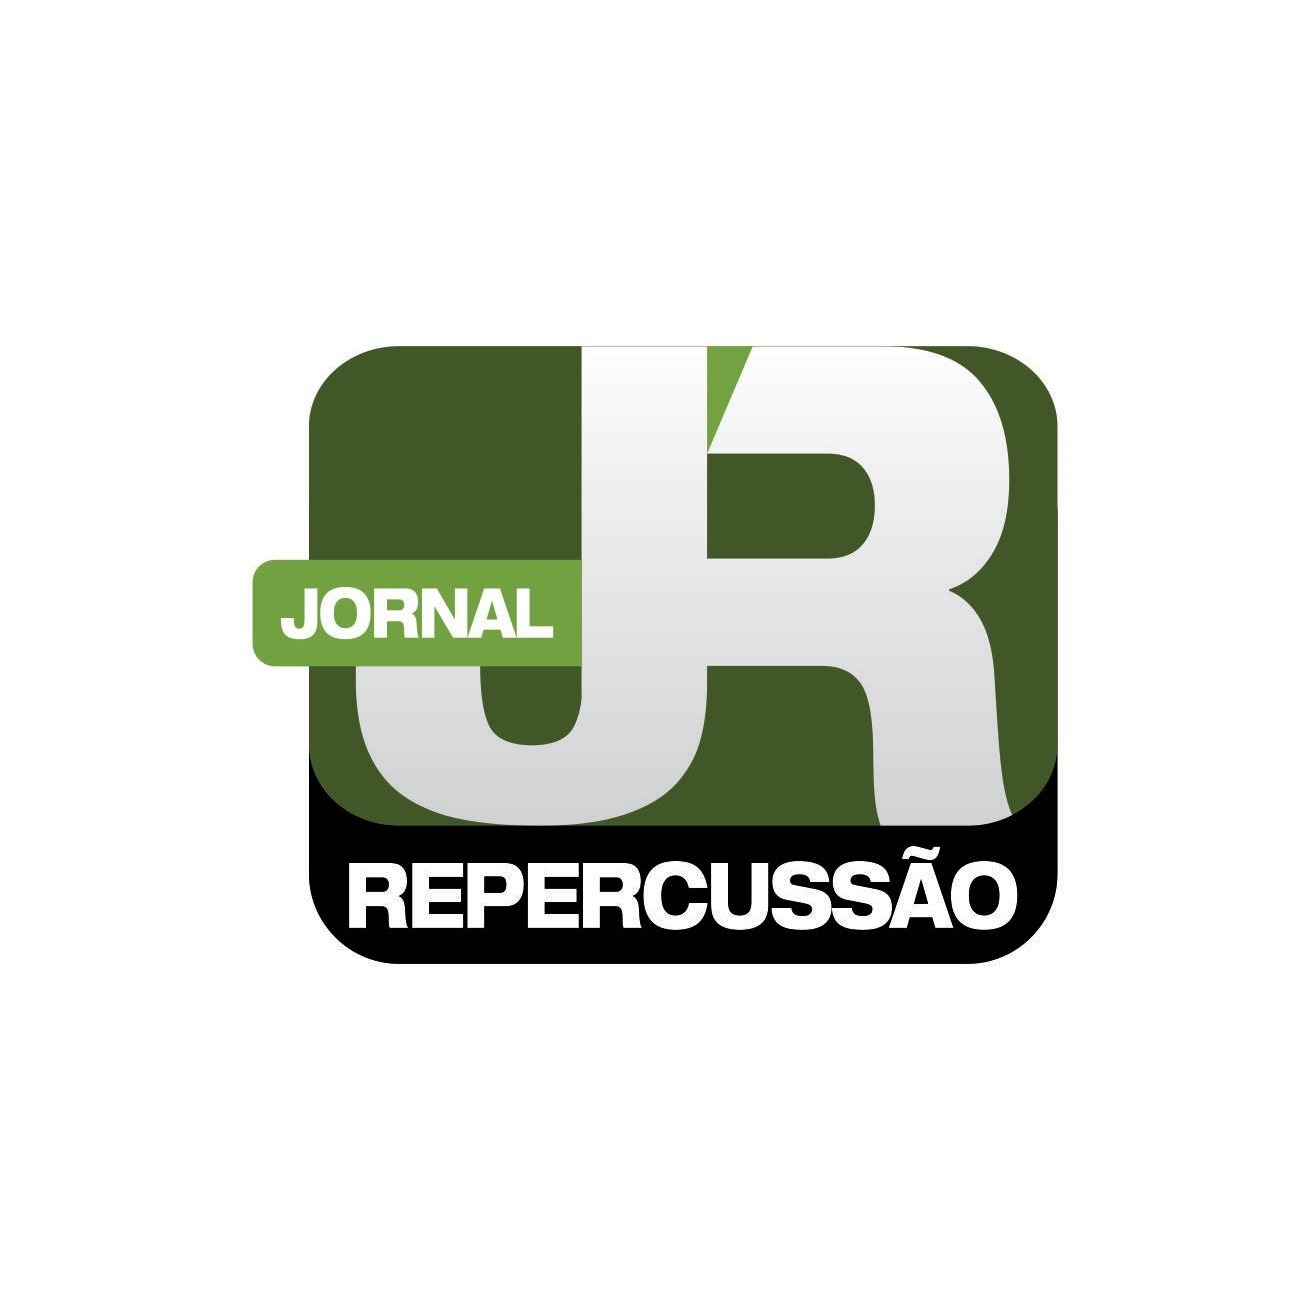 Subida de Montanha aquece o fim de semana em Sapiranga - Região - Jornal VS